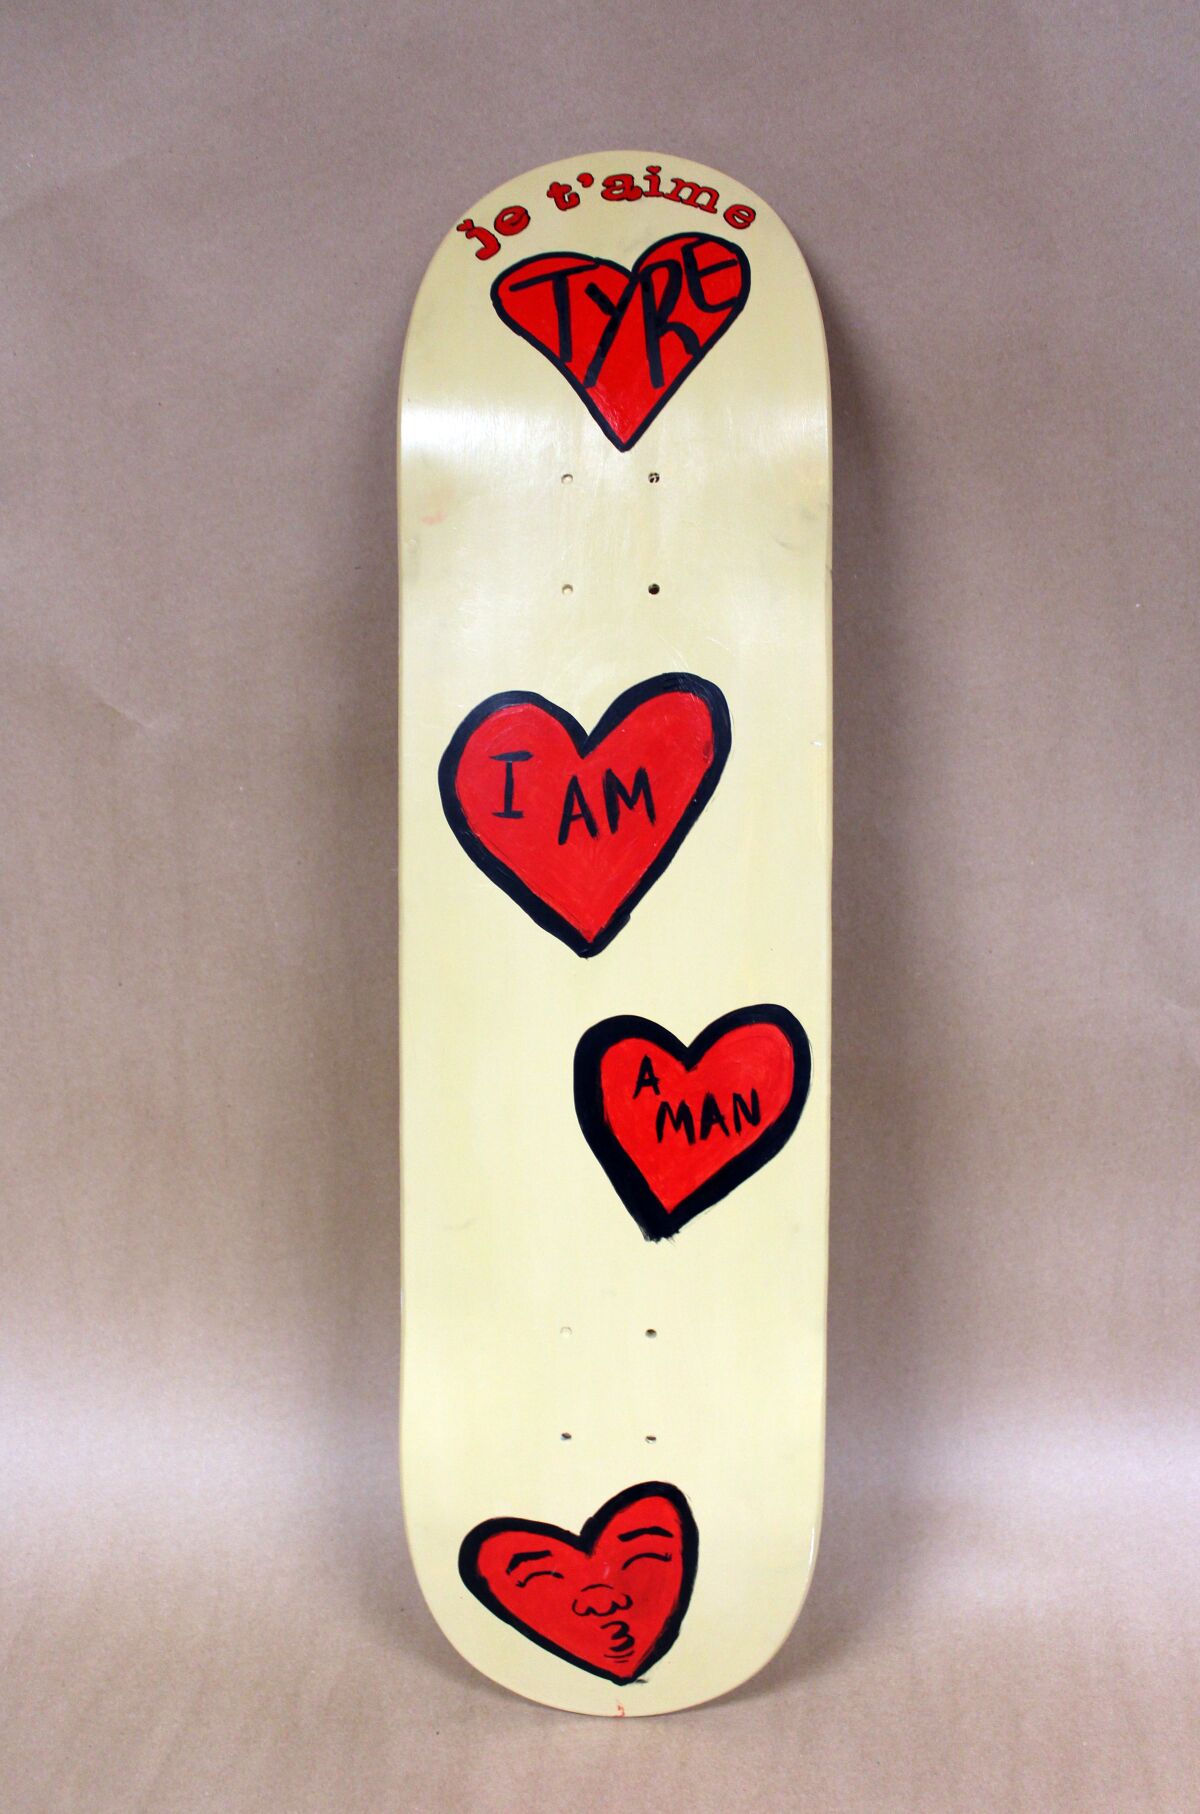 Auf einem Skateboard mit roten Herzen steht: "Je t'aime Tyre" Und "Ich bin ein Mann."